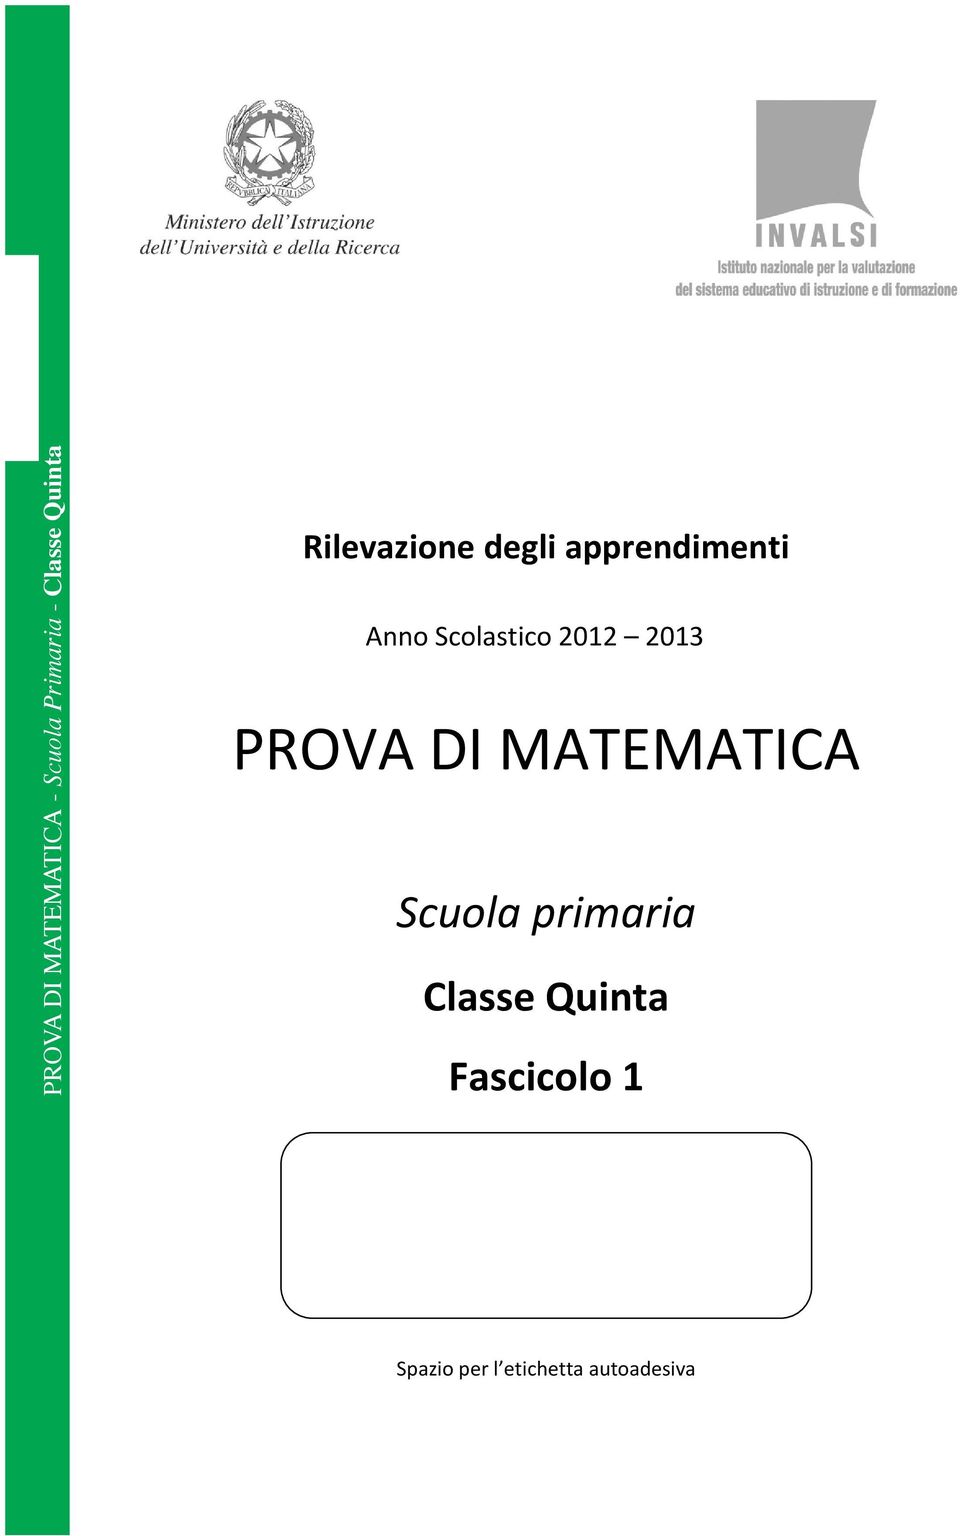 Scolastico 2012 2013 PROVA DI MATEMATICA Scuola